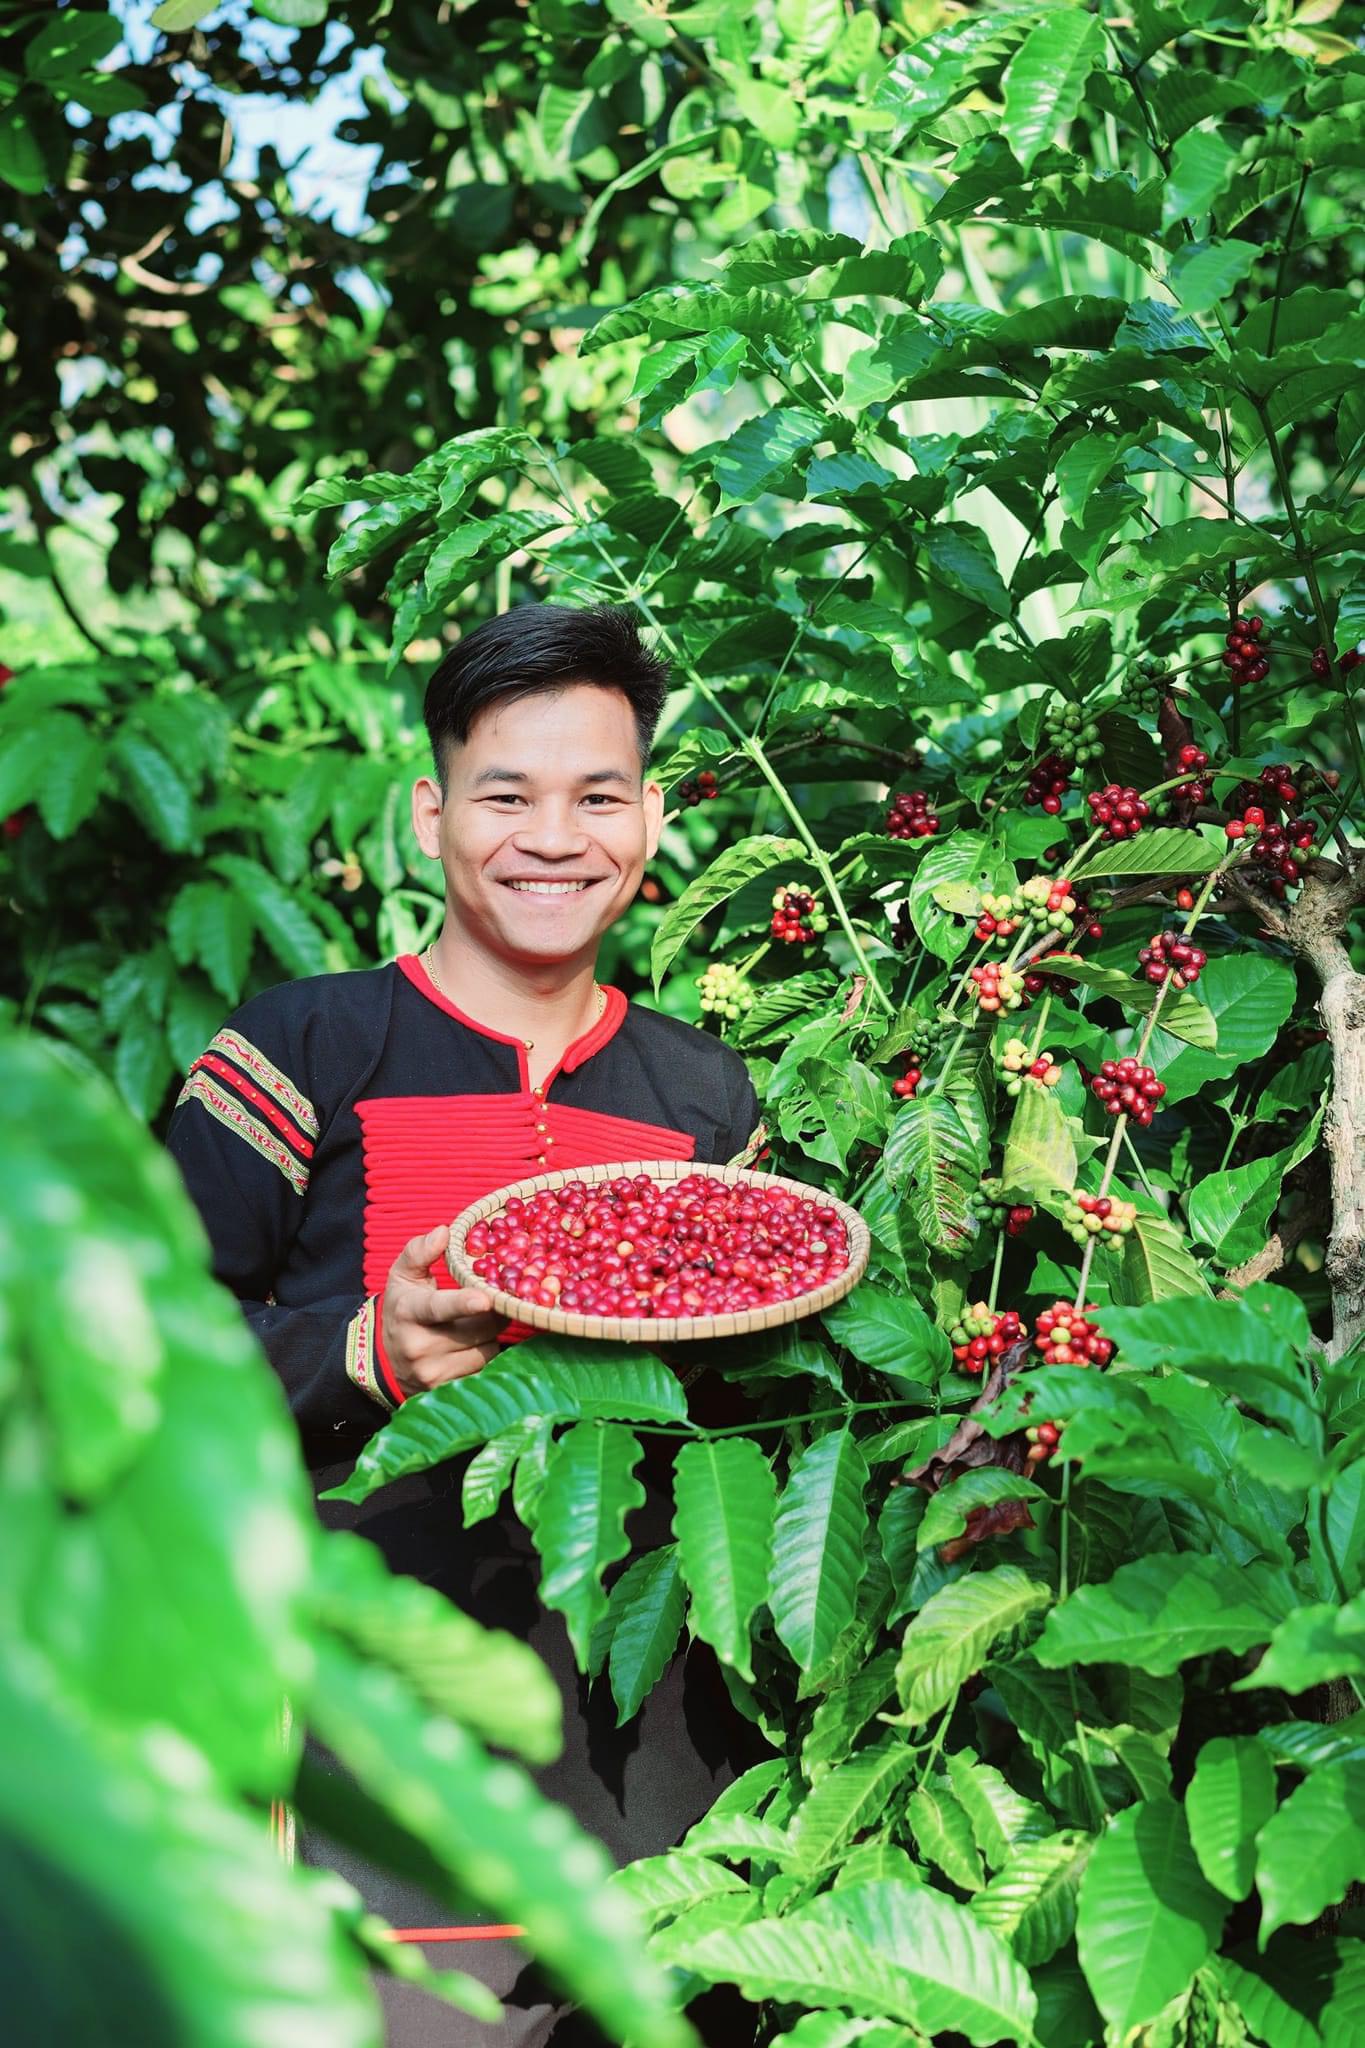 Anh nông dân Việt Nam xuất sắc người Ê Đê làm chủ công ty cà phê vào đề thi Olympic của tỉnh Đắk Lắk- Ảnh 1.